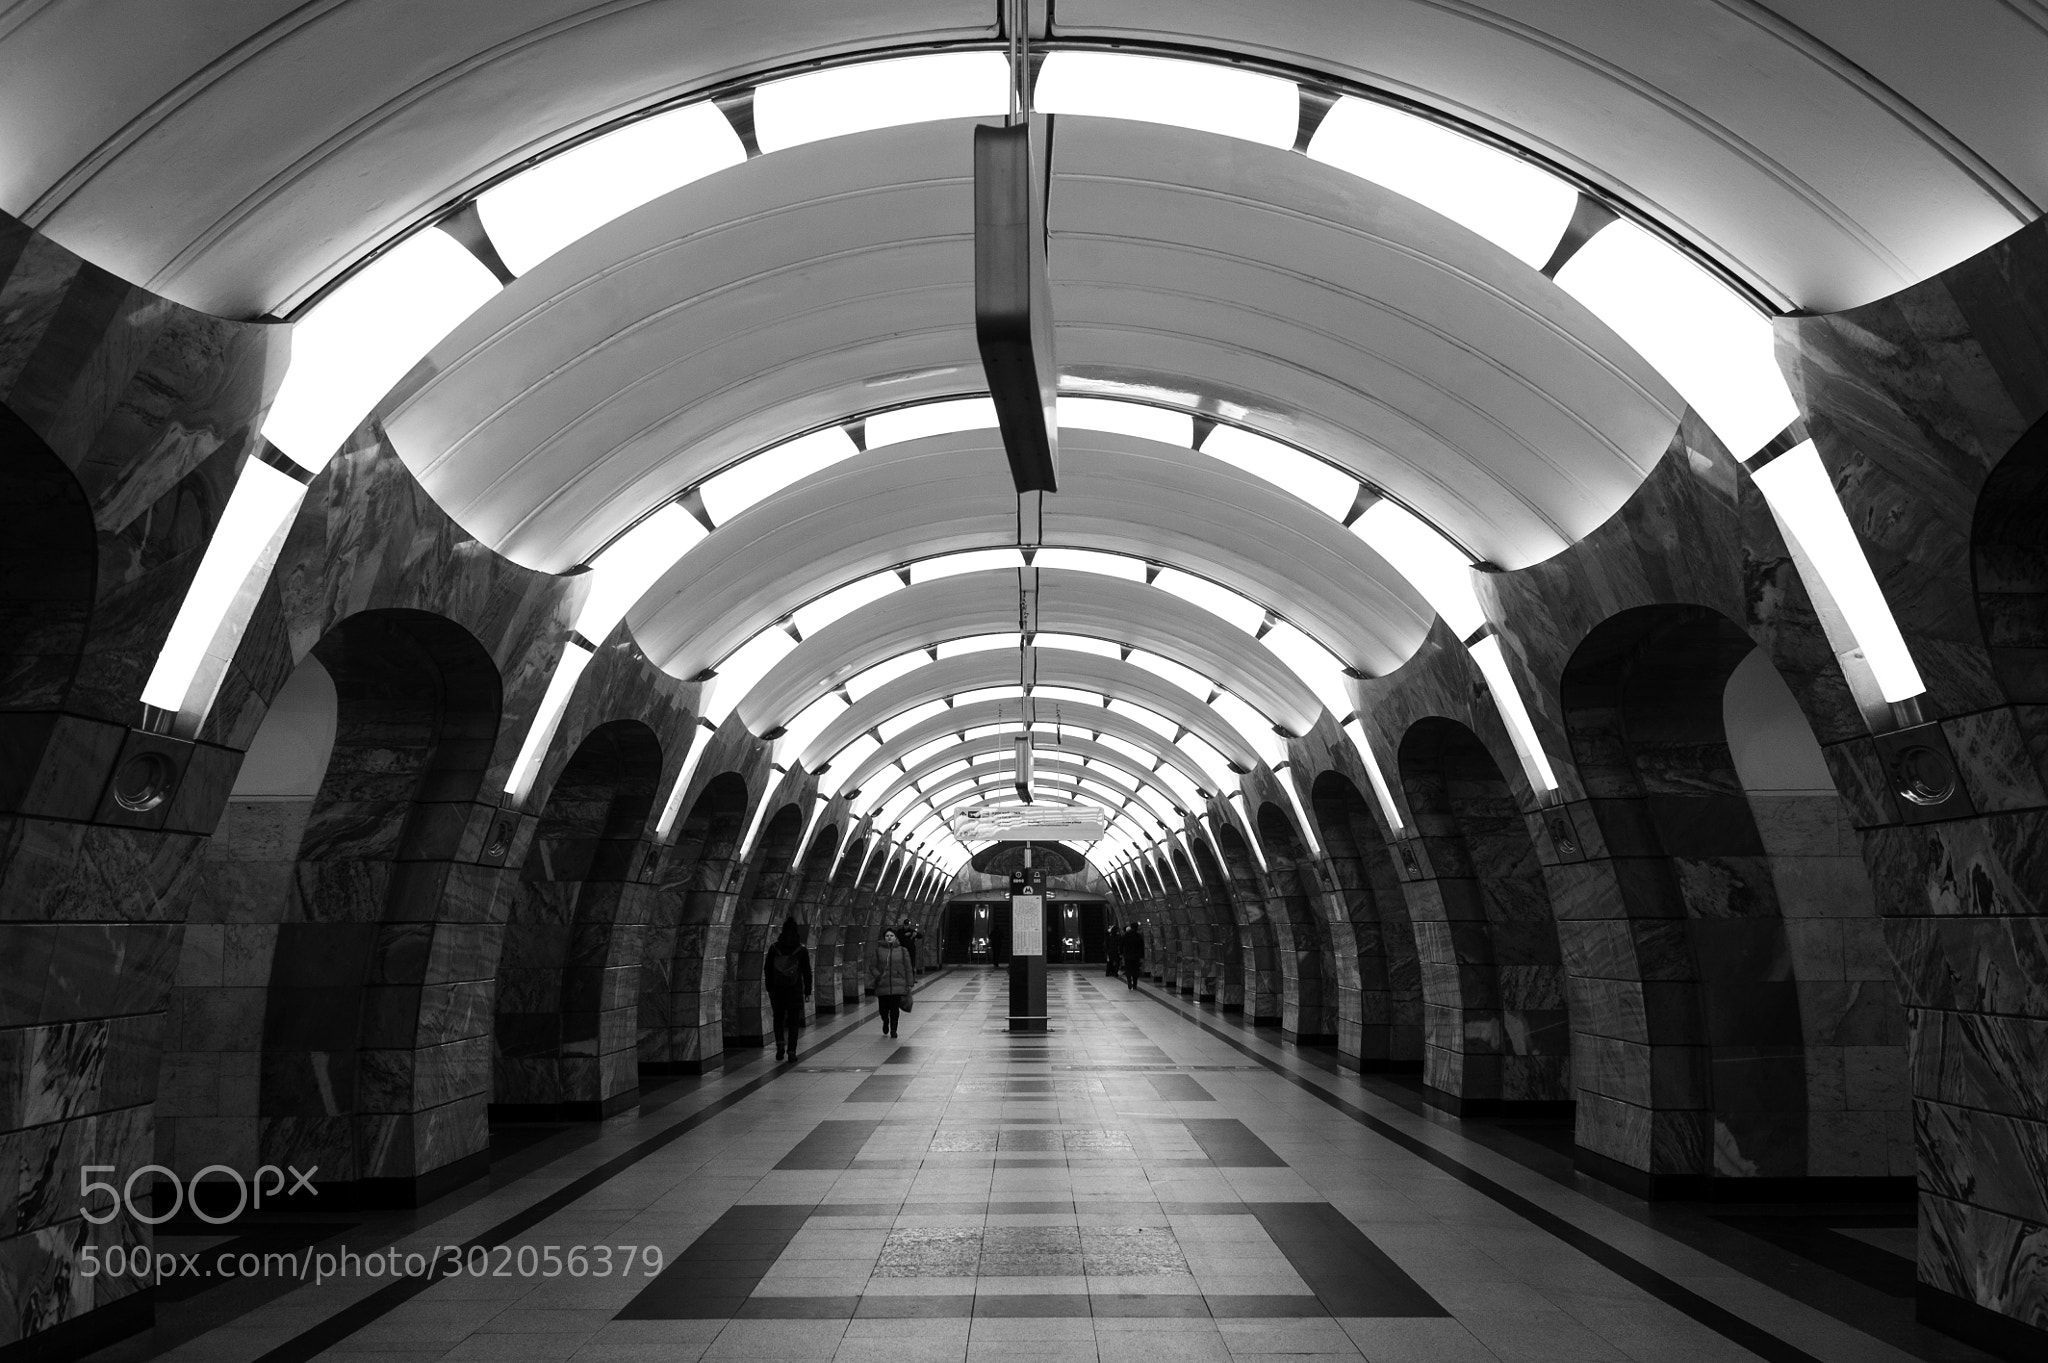 Moscow metro station Chkalovskaya by depecheyuri. Moscow metro, Metro station, Black n white image